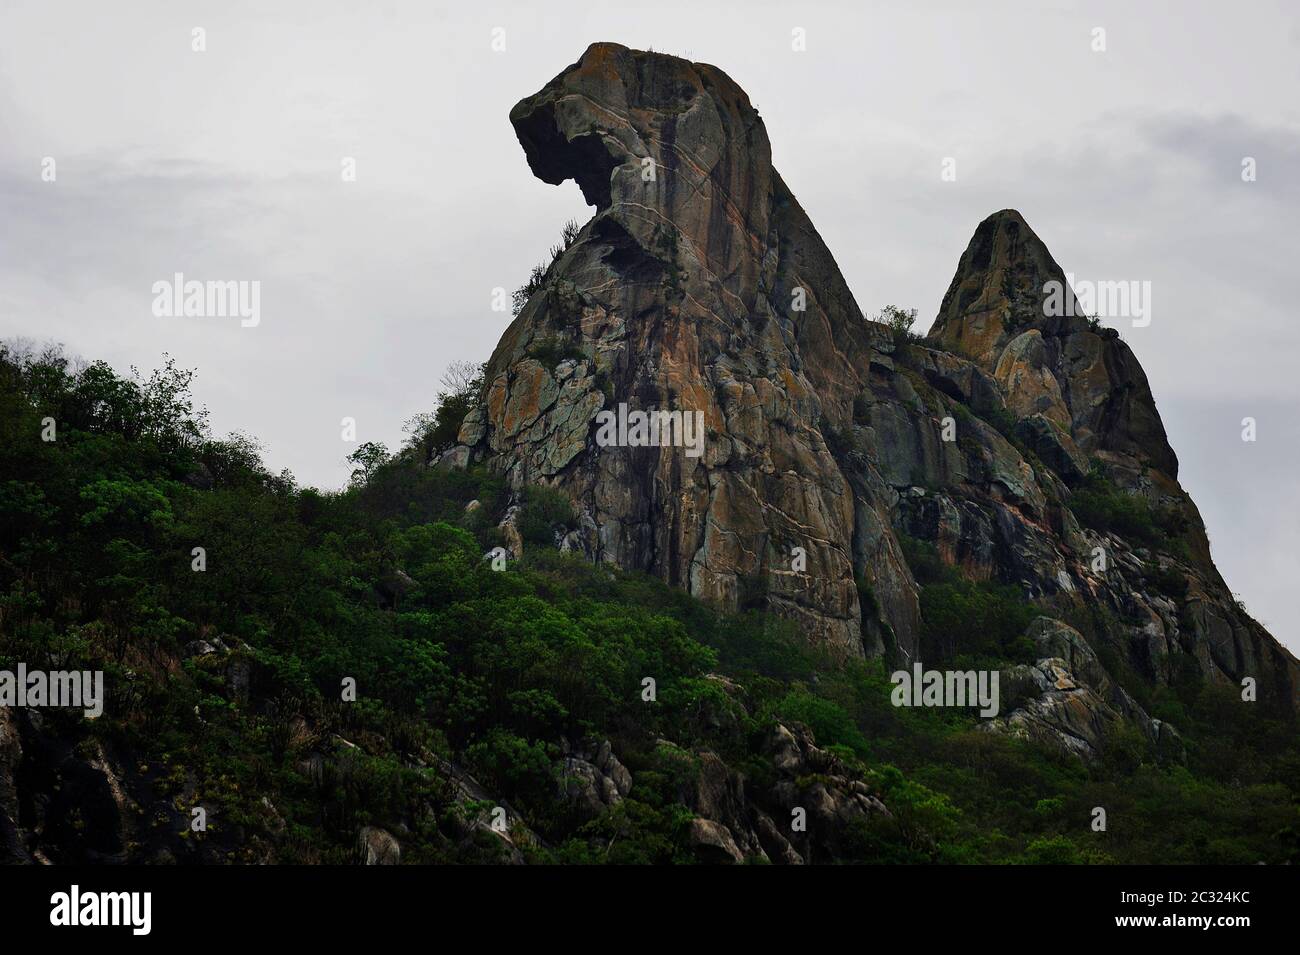 Montagne de pierre Quixadá monolithes Monument naturel, formation d'inselbergs à Ceará, Brésil, réserve naturelle. Forme de poulet, Broody Hen curieux rock Banque D'Images